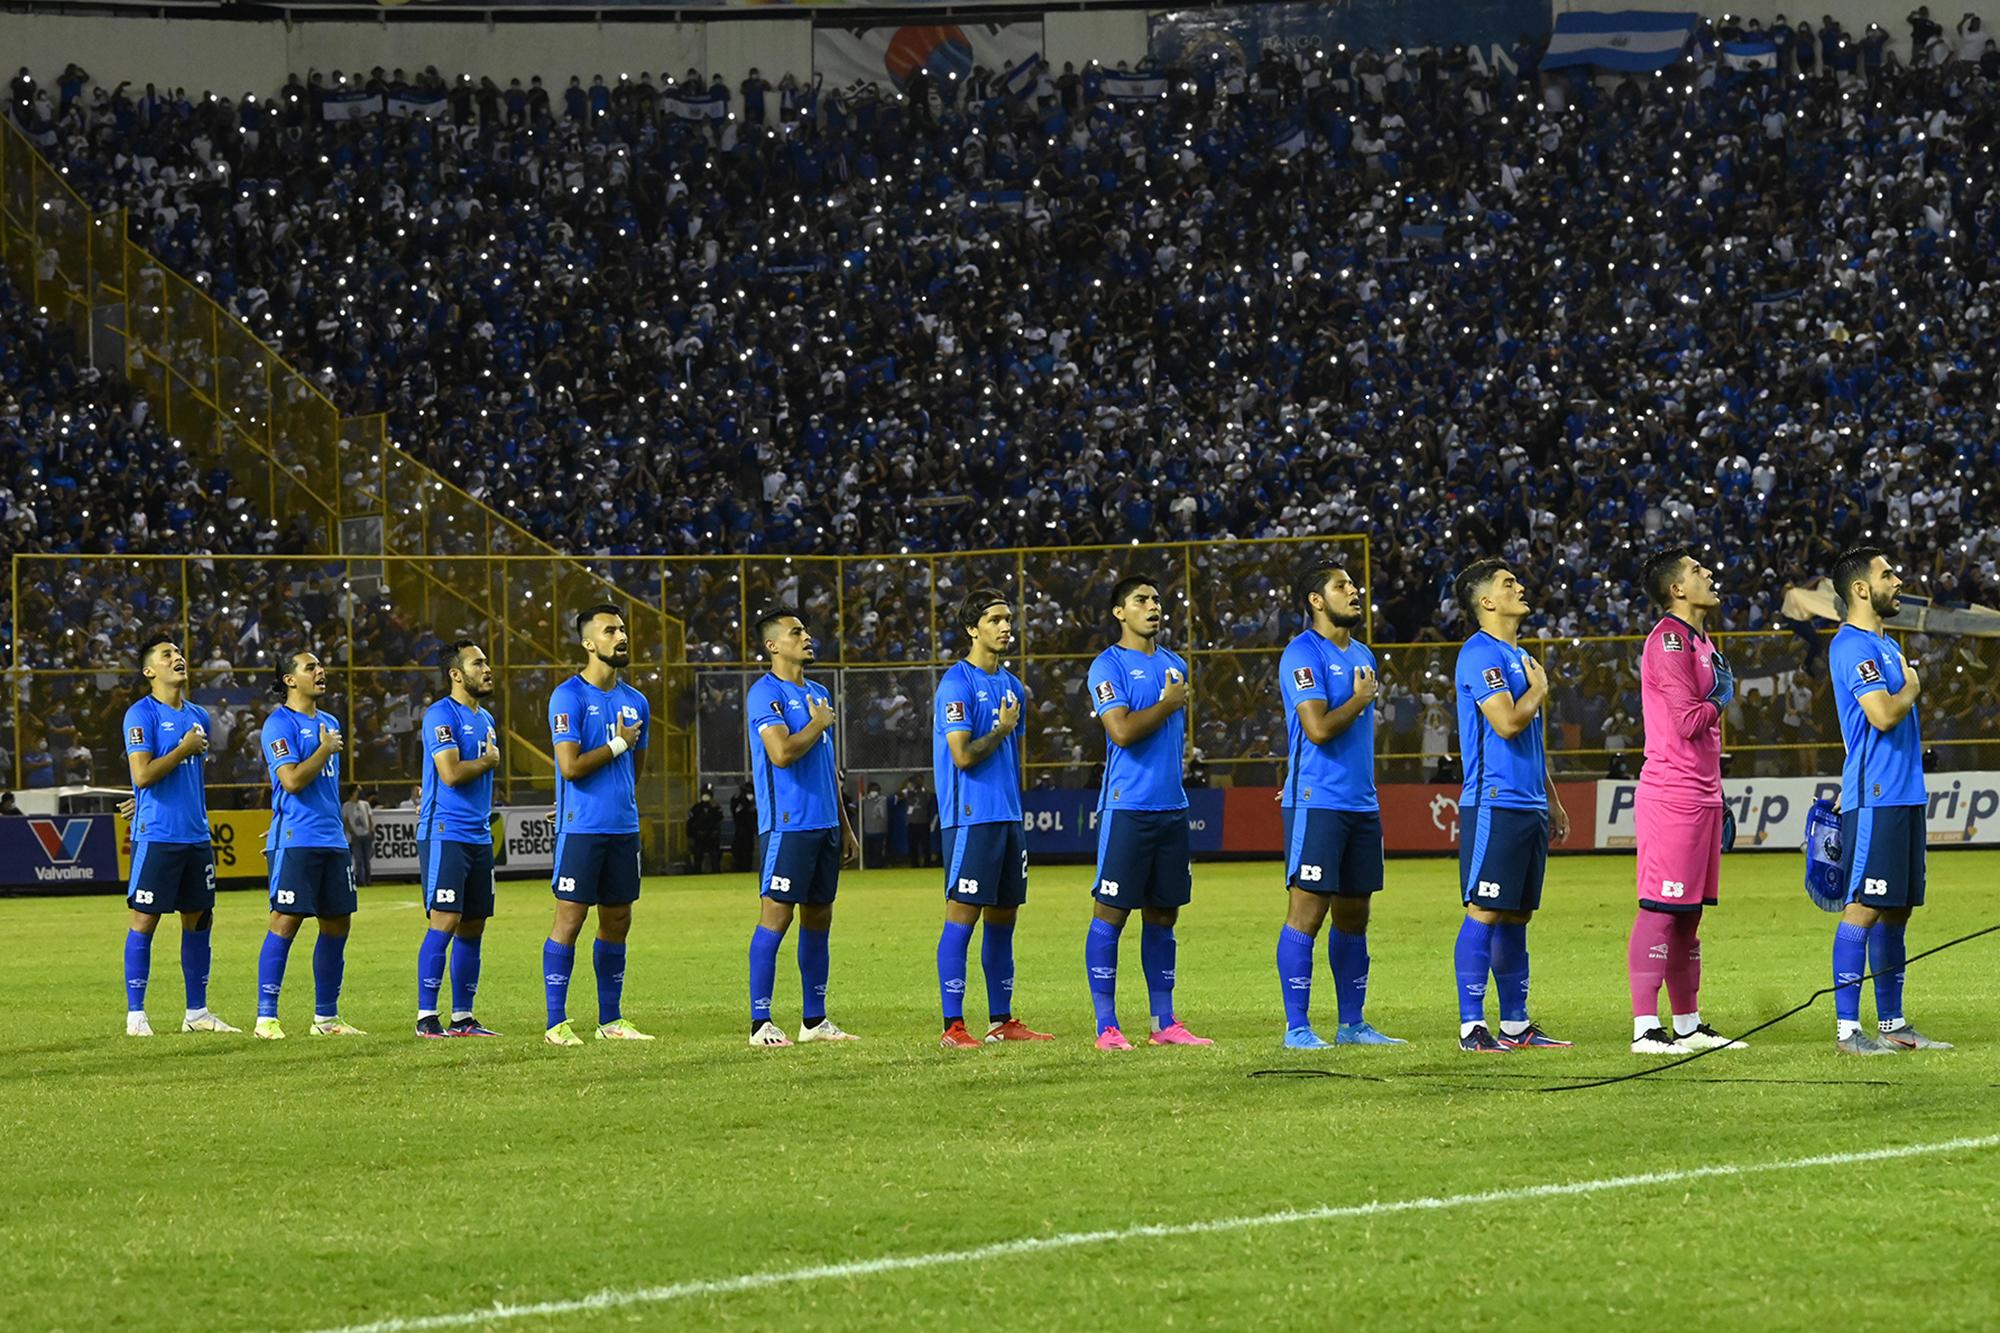 El equipo titular de El Salvador canta el himno nacional antes de su partido contra la selección de México el 13 de octubre de 2021, en el estadio Cuscatlán, en San Salvador. Foto de El Faro / Marvin Recinos.